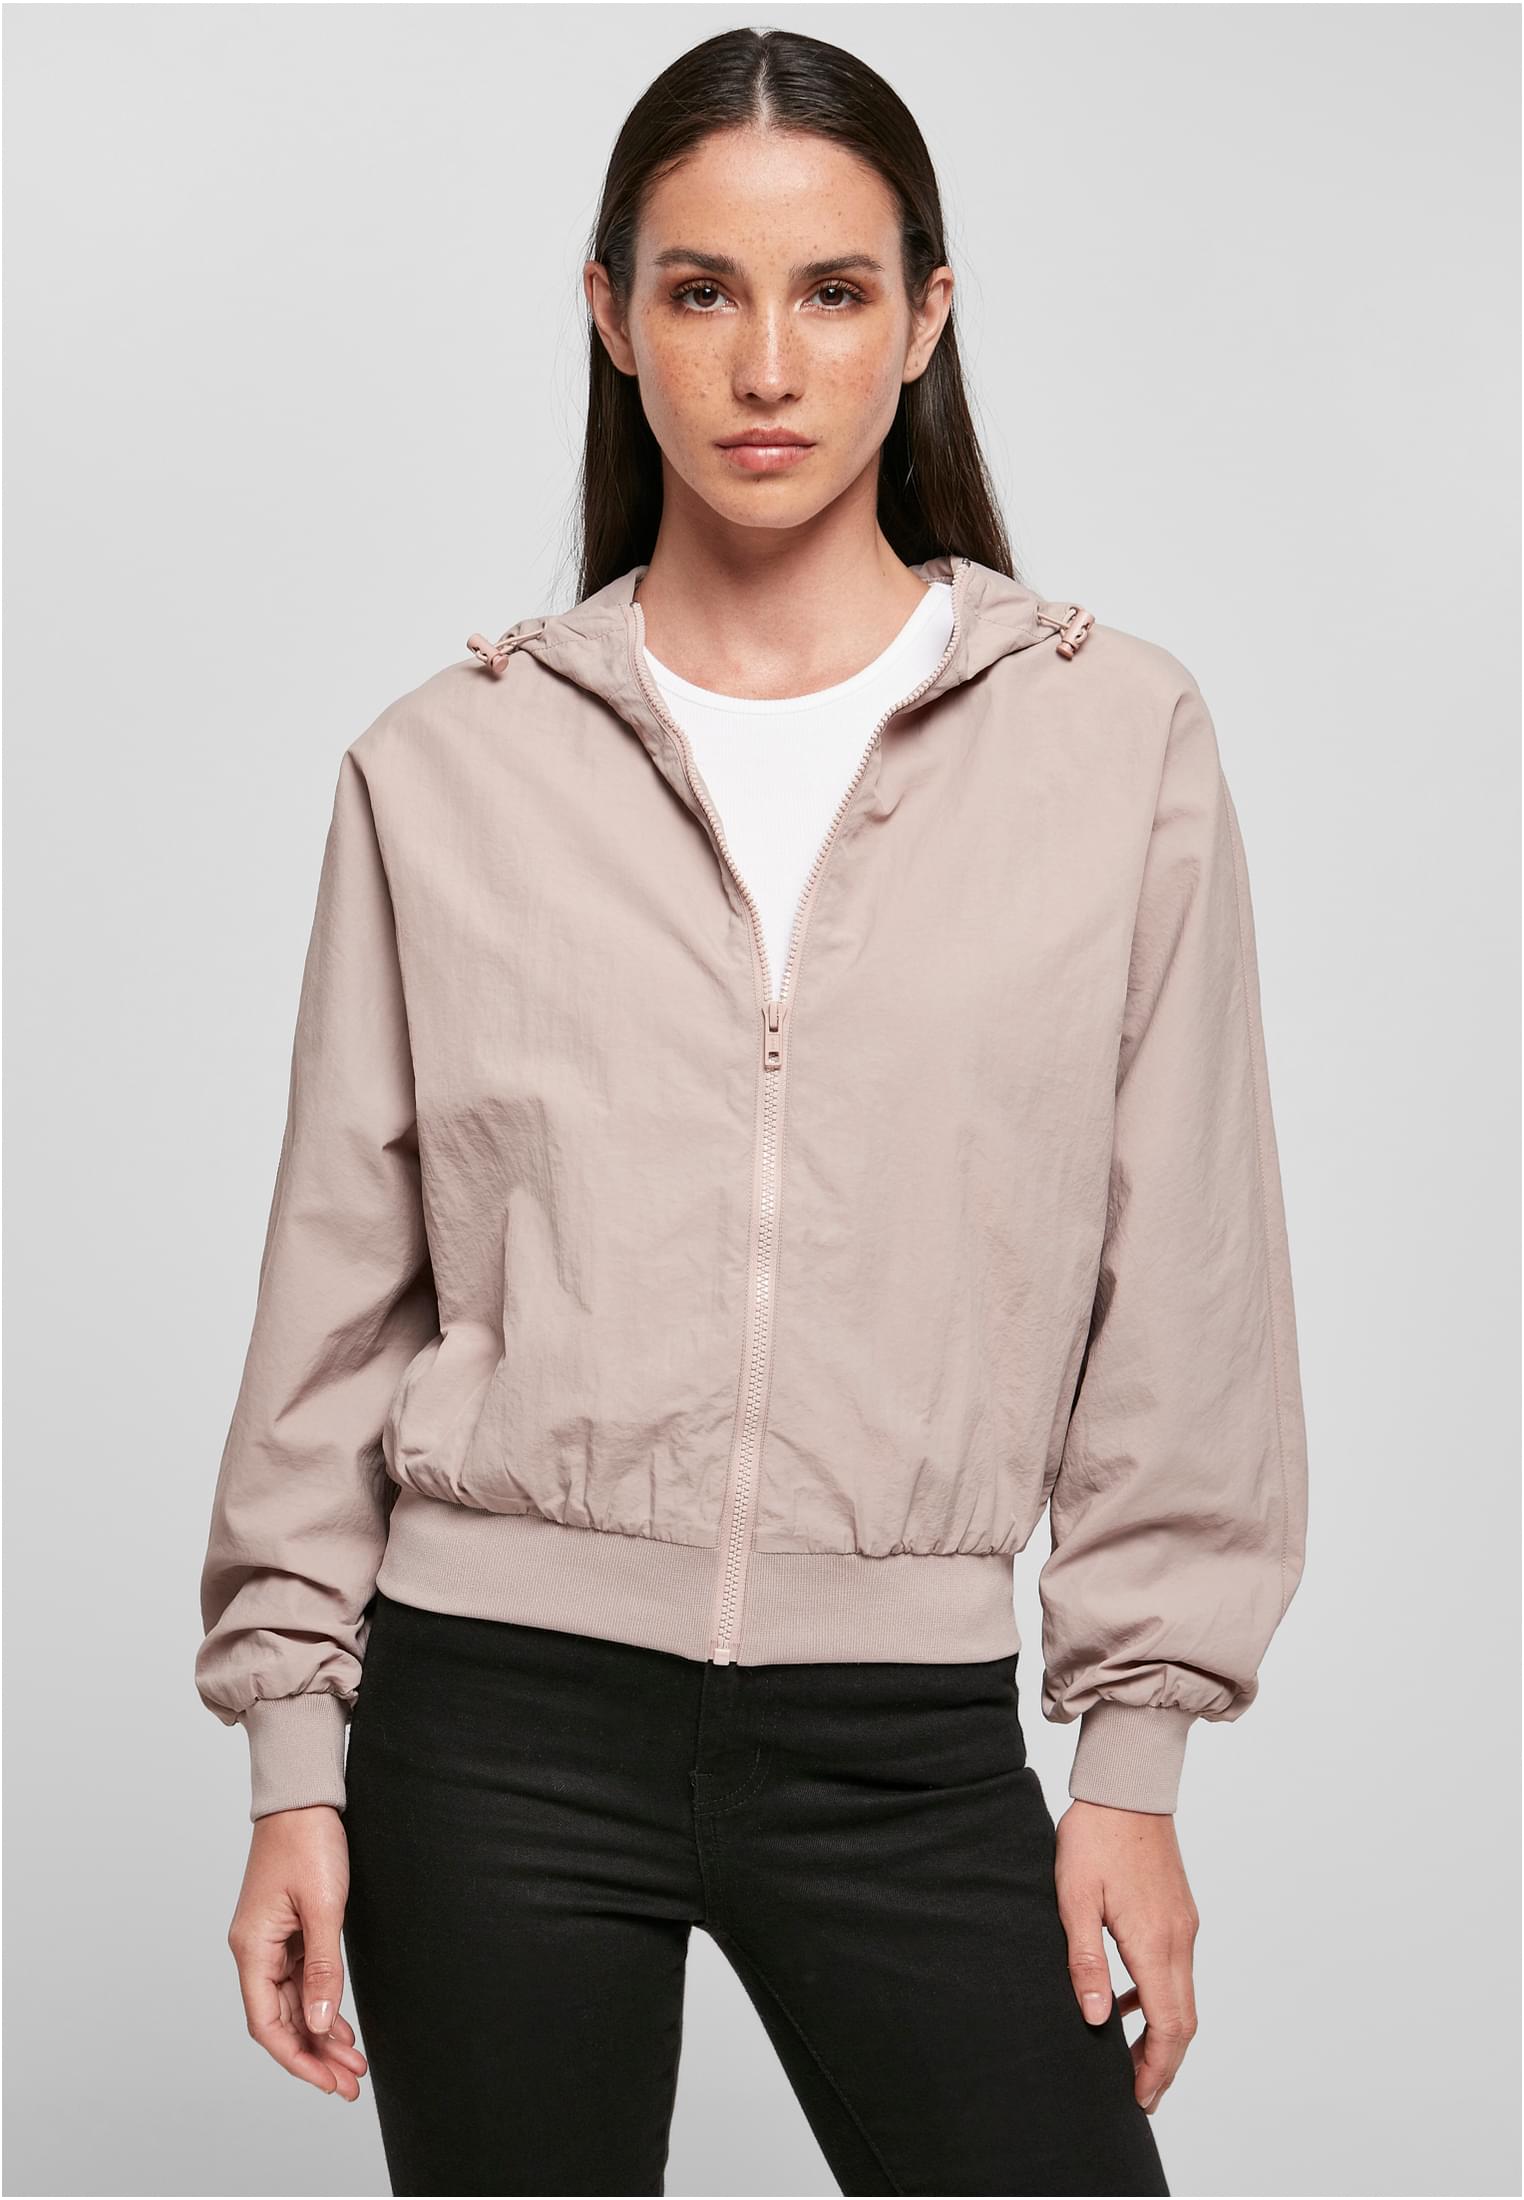 [Niedrigster Preis und höchste Qualität] Ladies Crinkle Batwing Jacket blankstore –